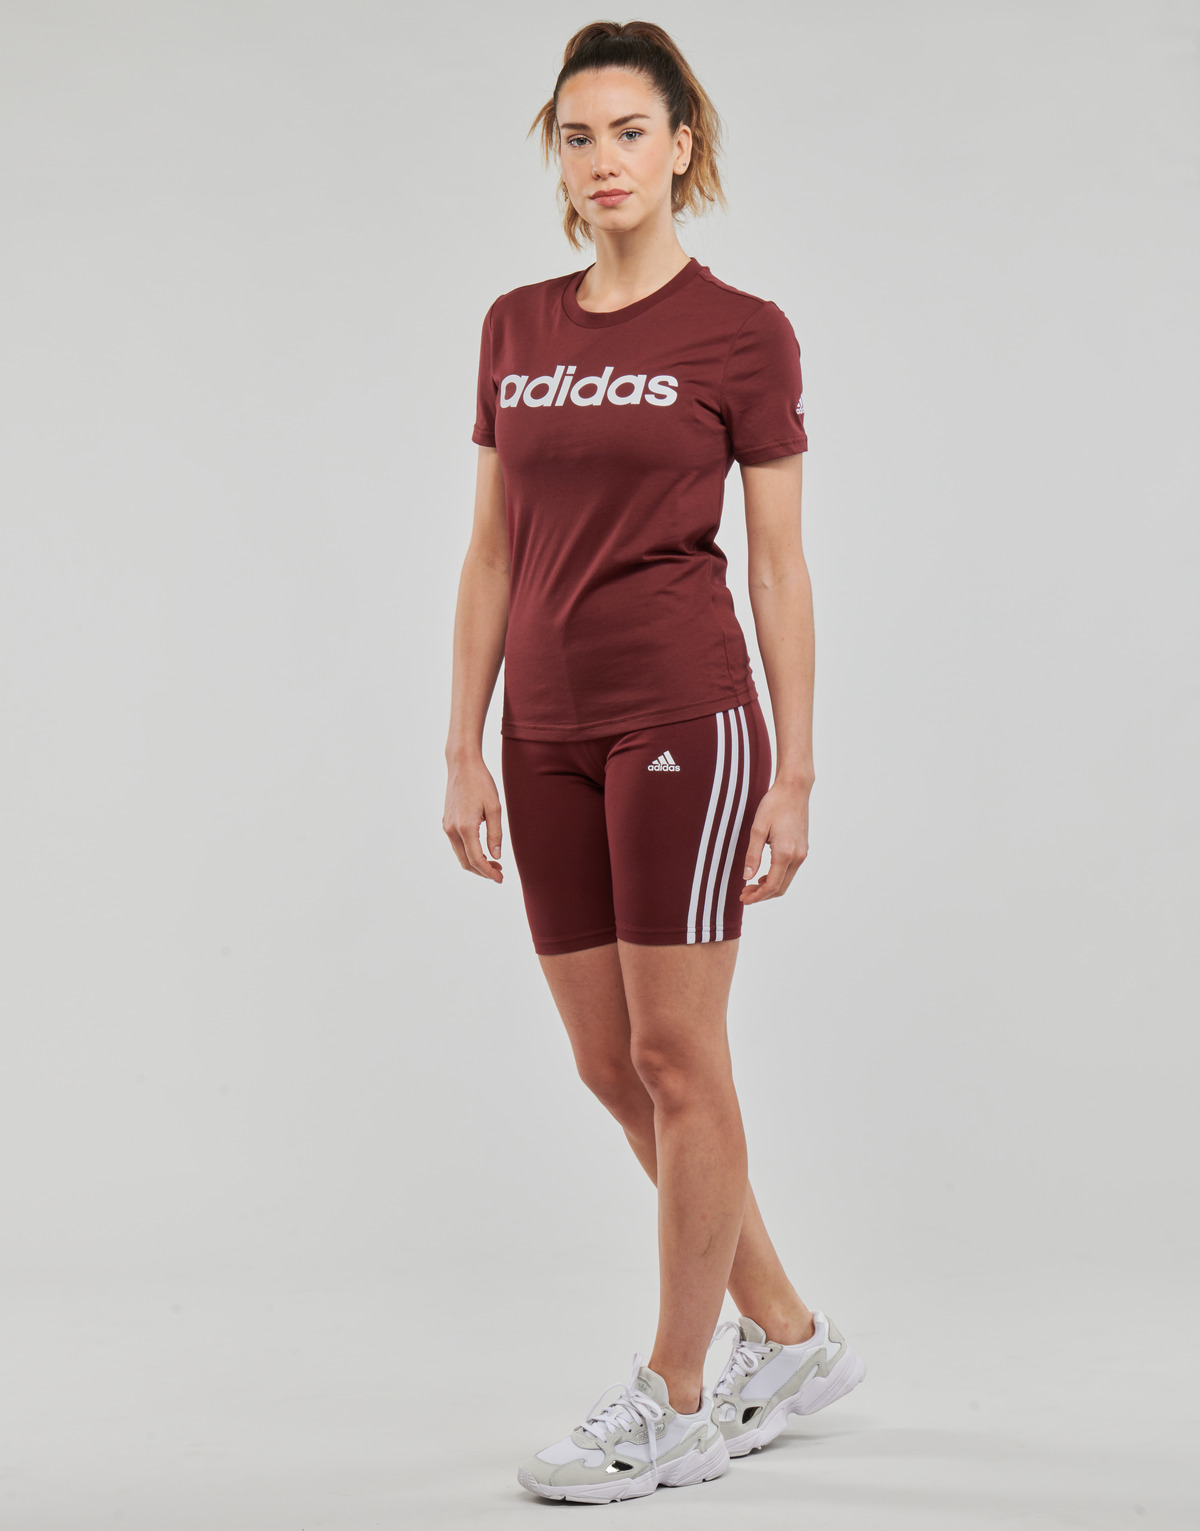 Adidas Sportswear Marron / Blanc LIN T zzfrAGko